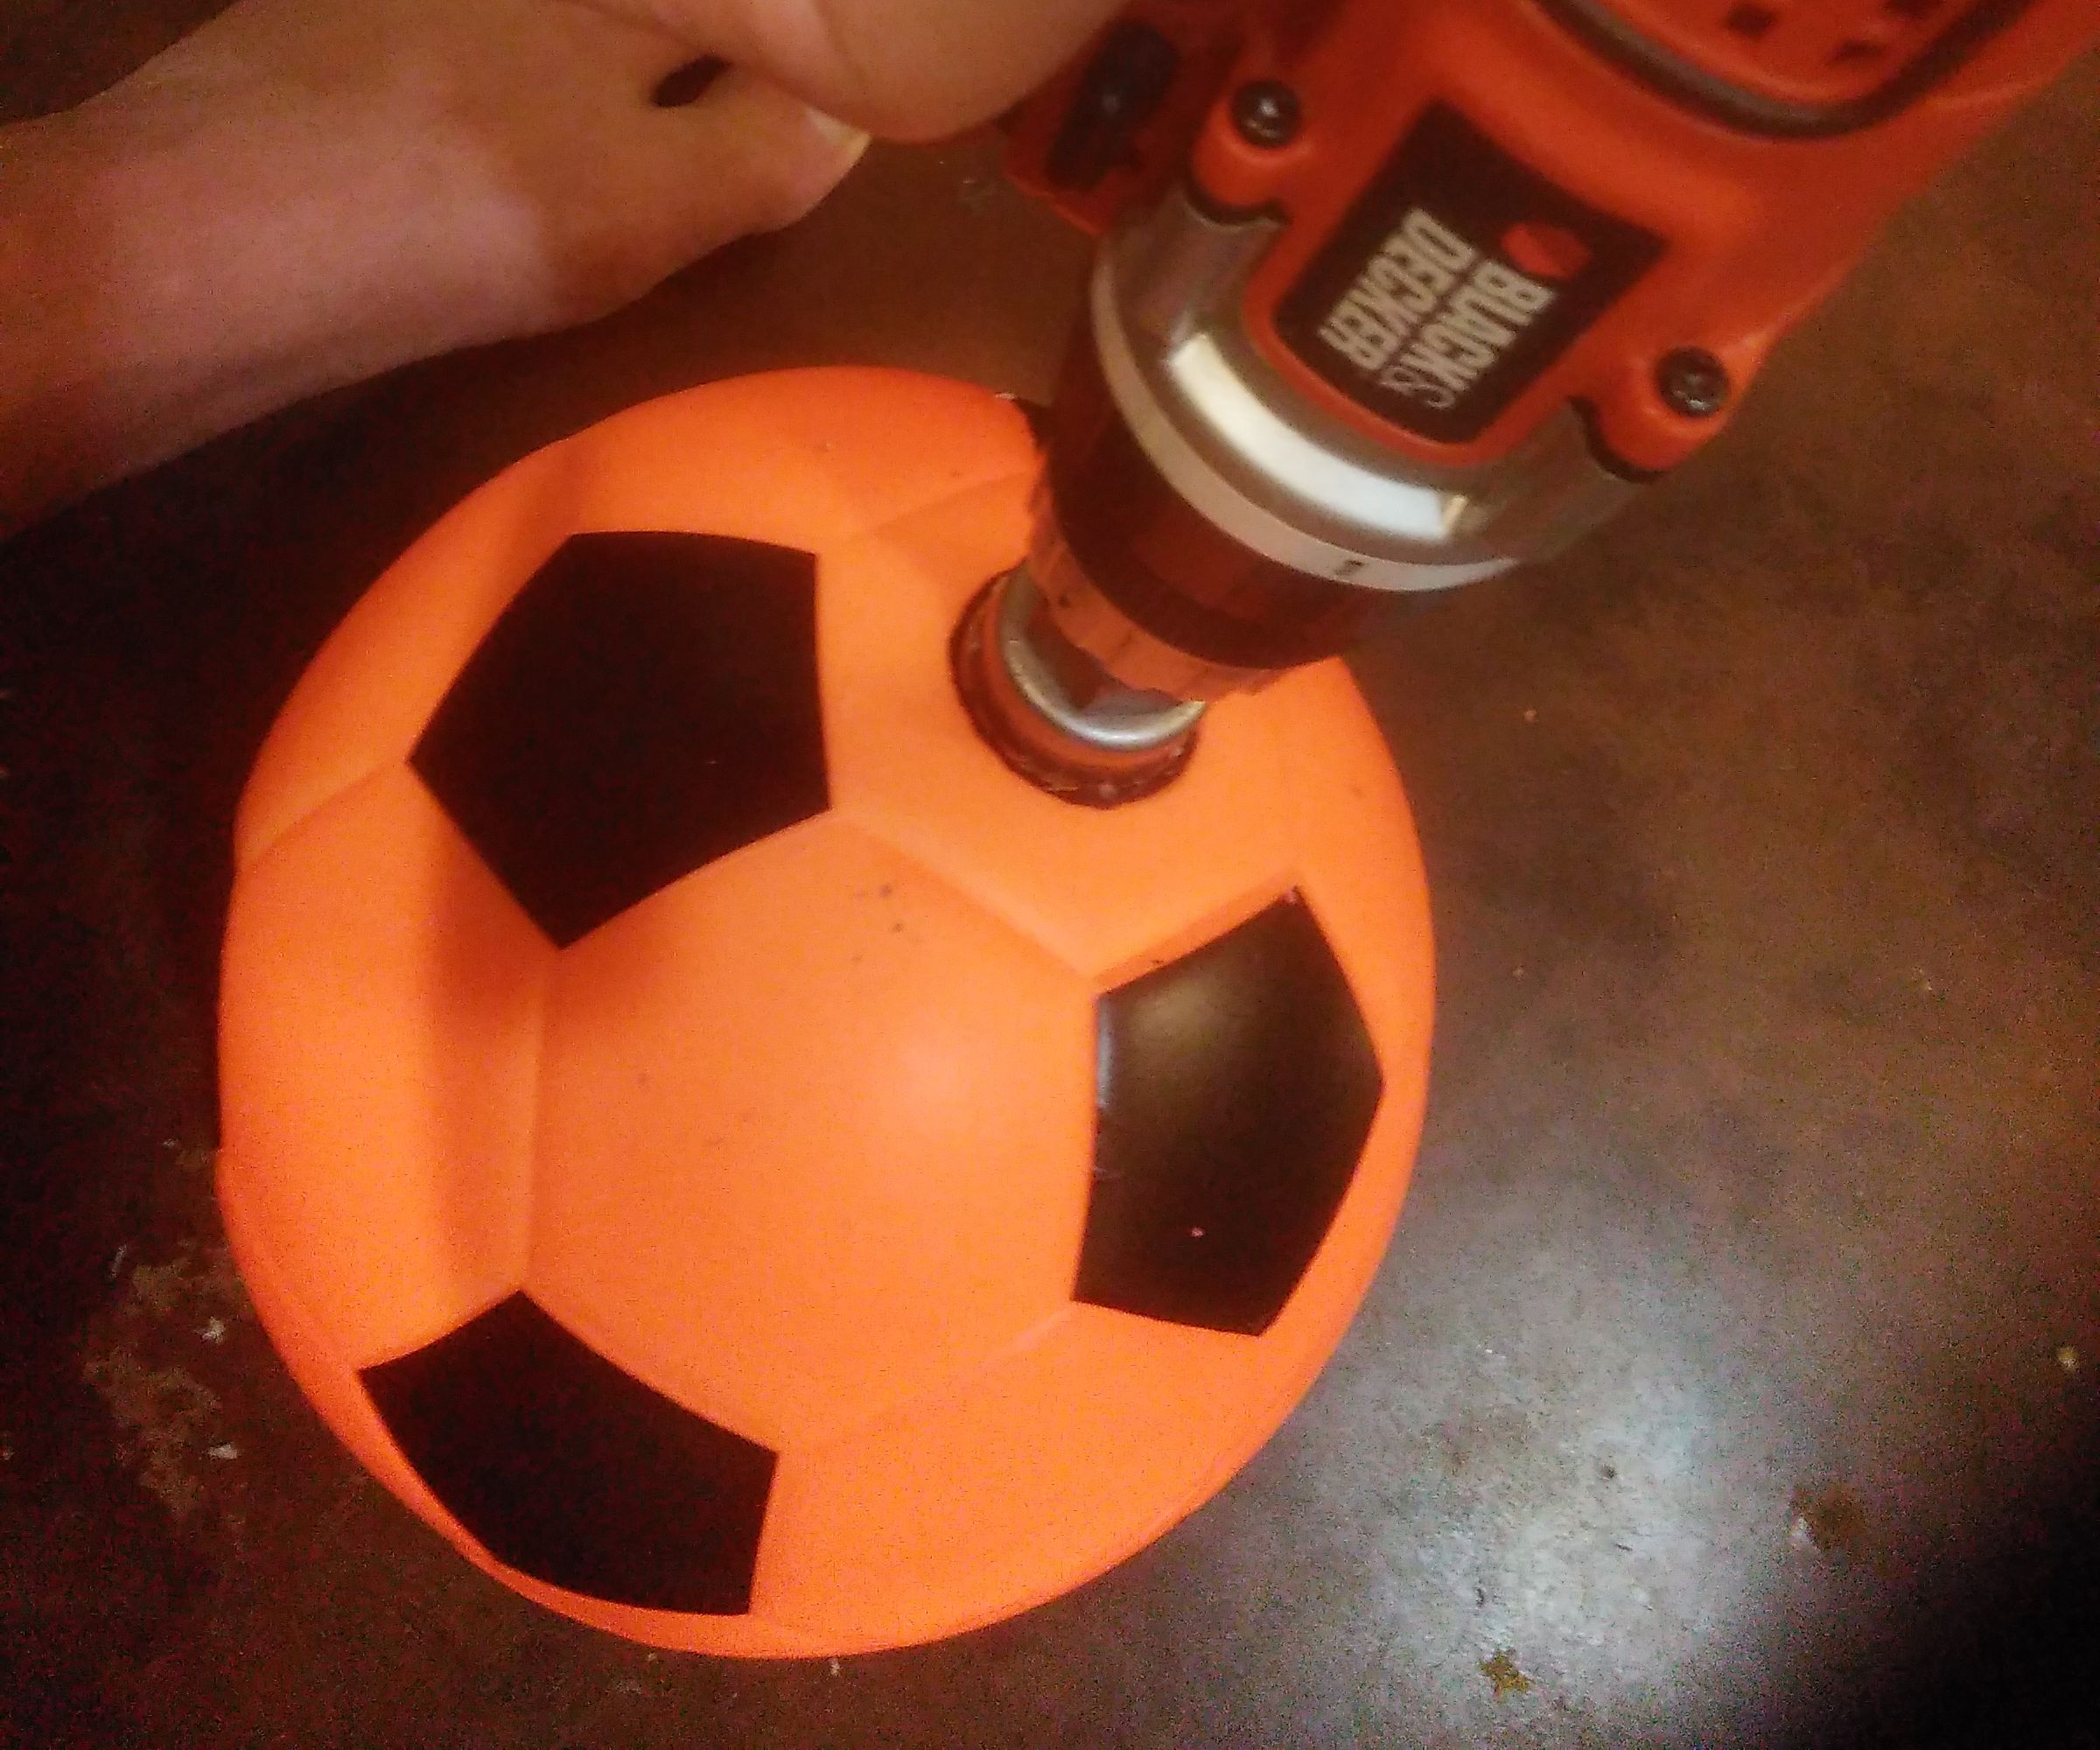 MP3 Foam Soccer Ball for the Blind